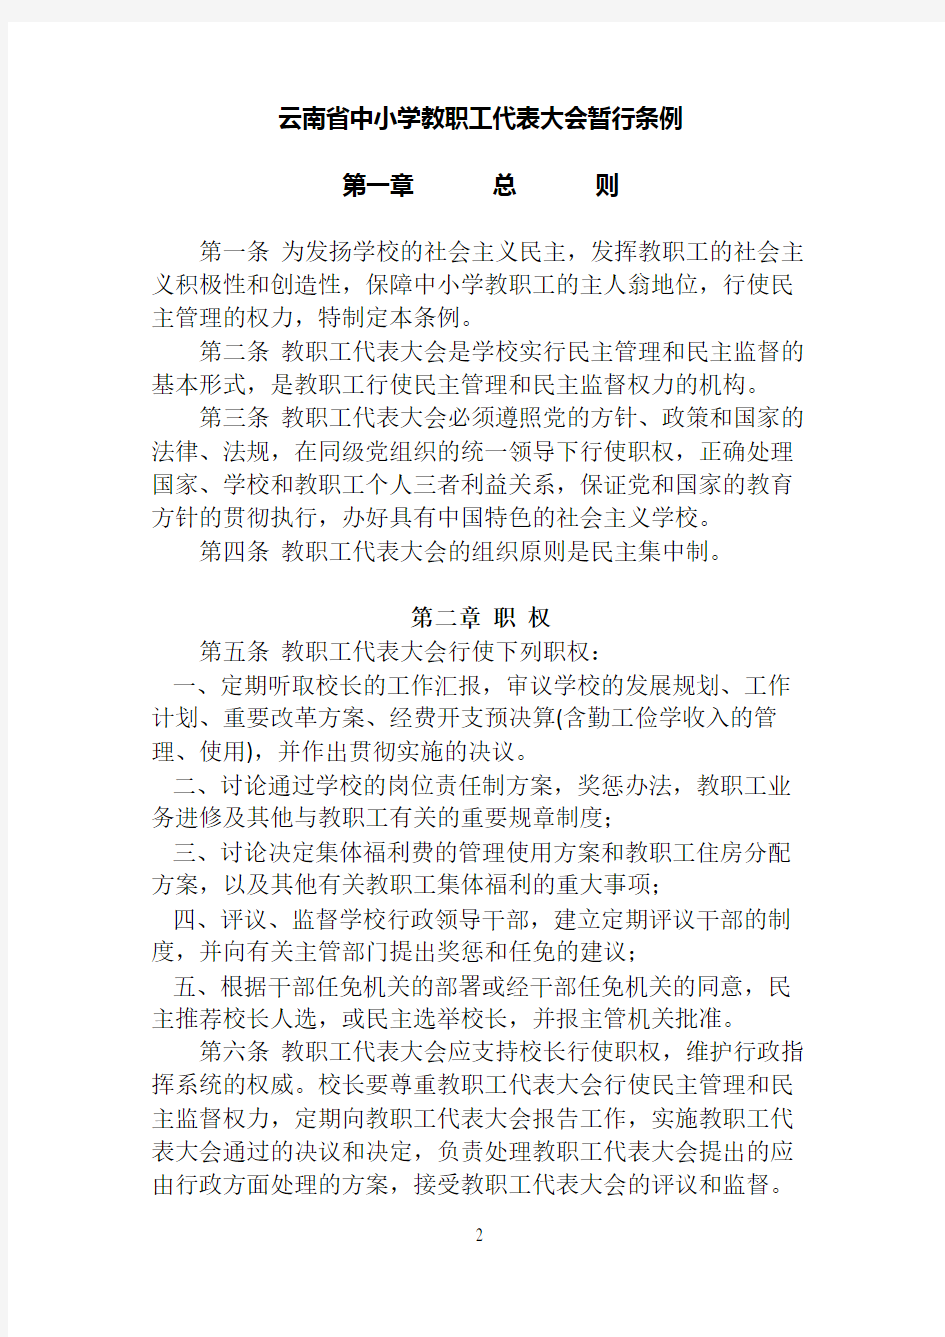 云南省中小学教职工代表大会暂行条例